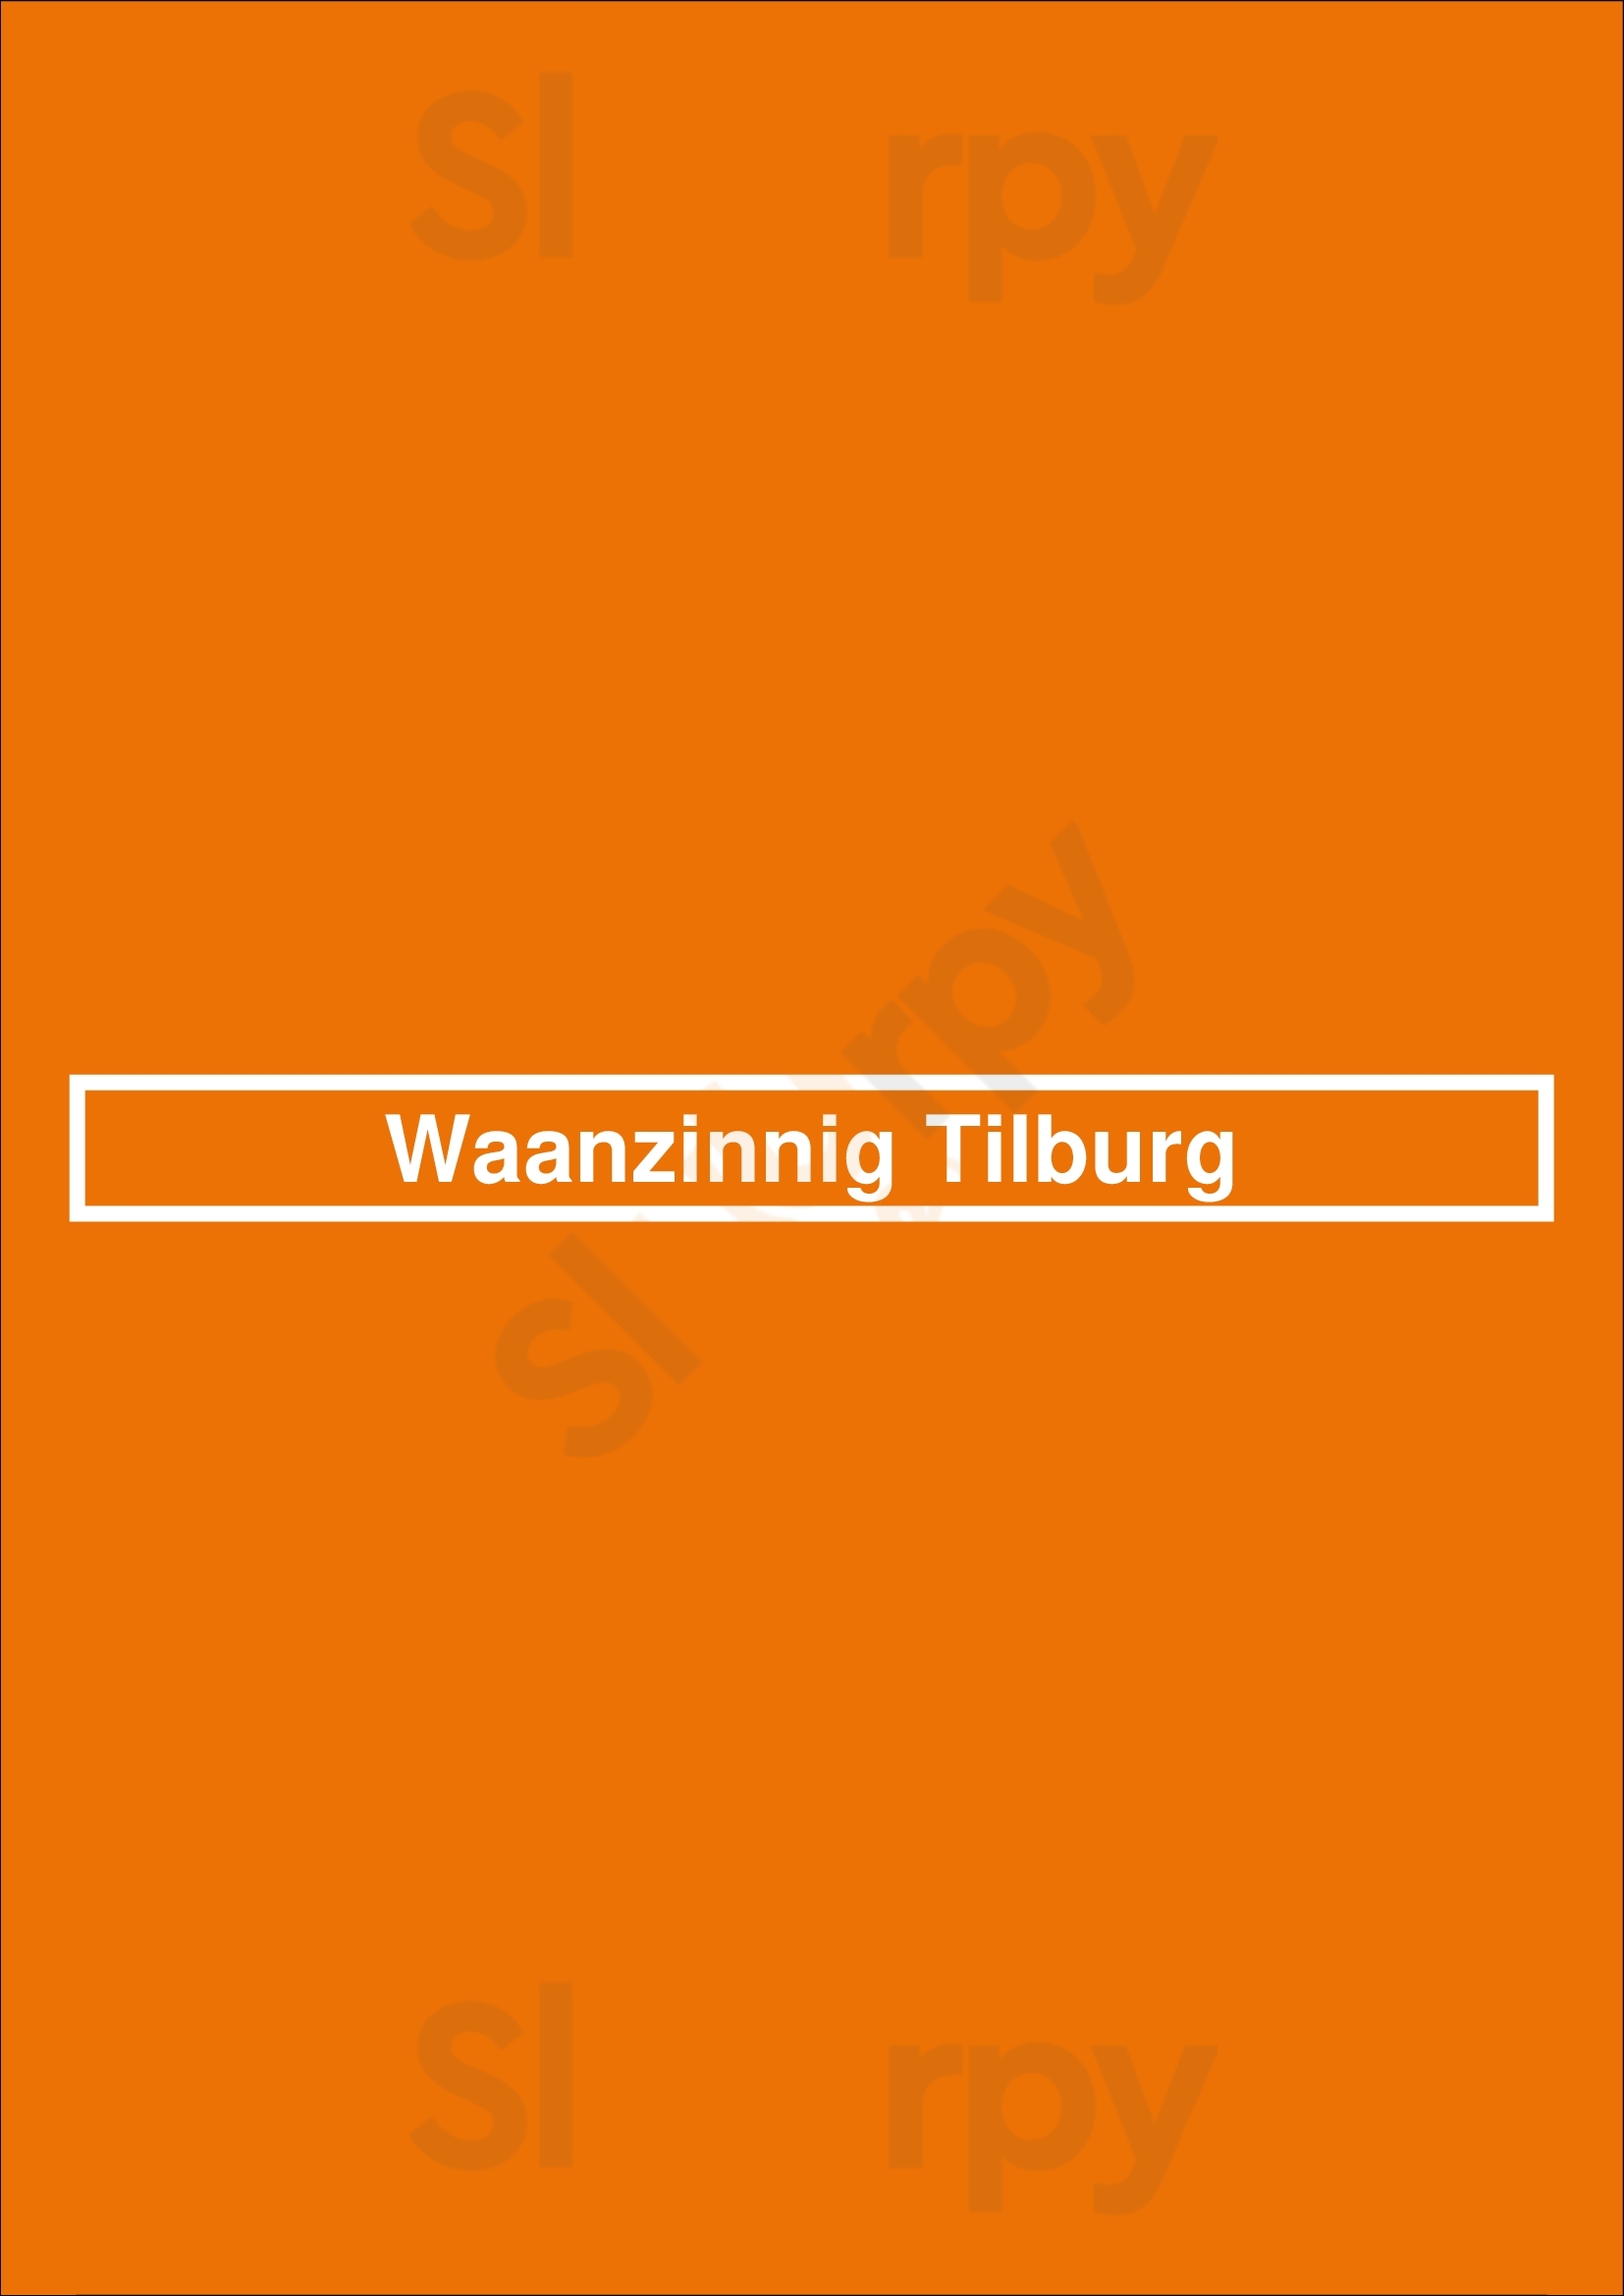 Waanzinnig Tilburg Tilburg Menu - 1